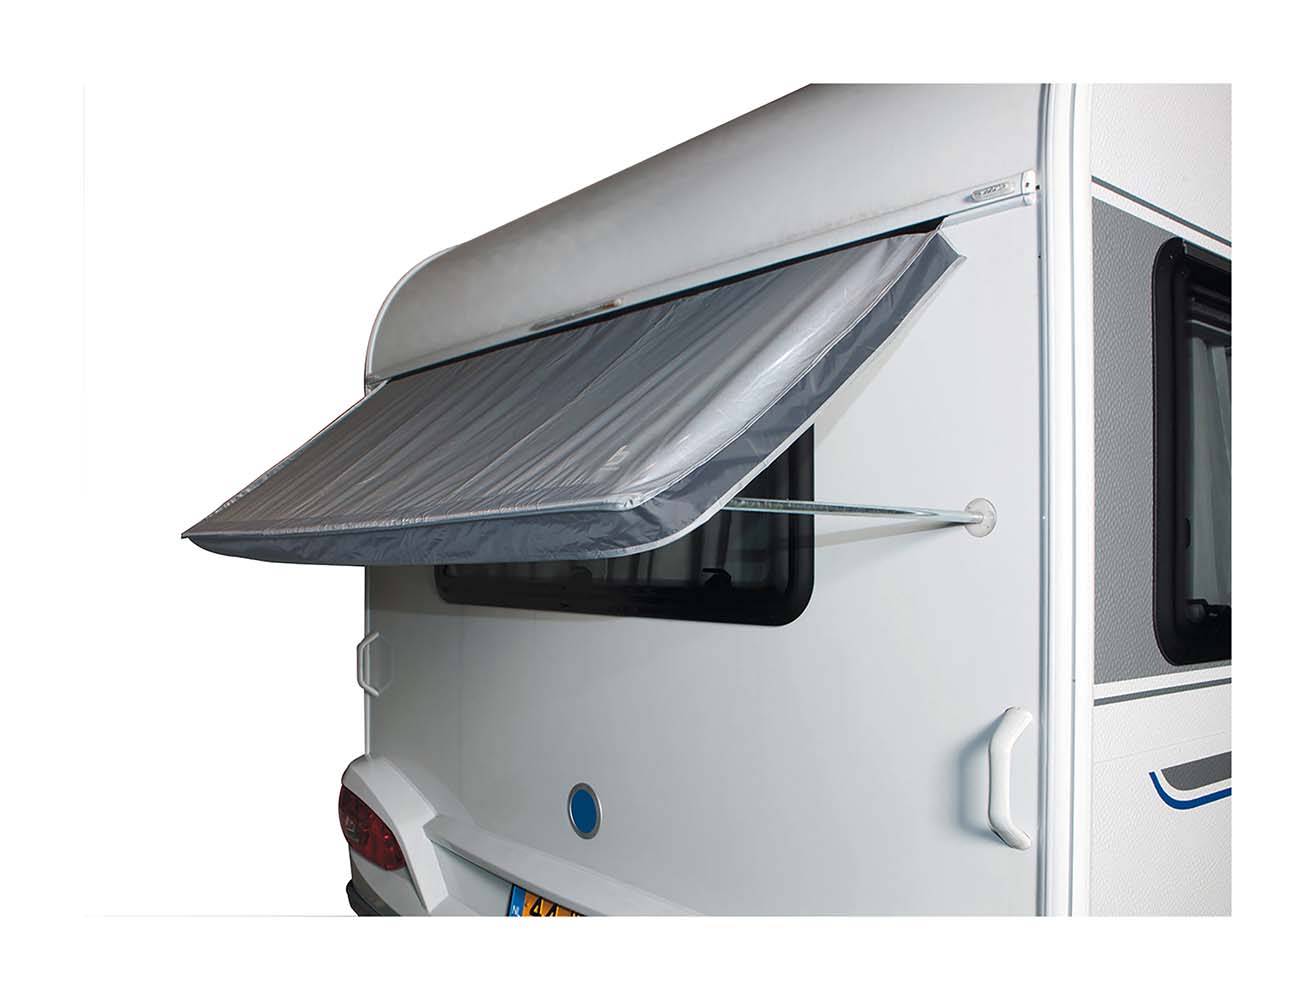 4117730 Eine praktische Markise für ein Wohnwagenfenster. Hält die Sonne und die Wärme außerhalb des Wohnwagens. Diese Wohnwagen-Fenstermarkise kann mit einer Schnur an der Wohnwagenschiene befestigt werden und verfügt über Saugnäpfe am verzinkten Stahlrahmen zur Befestigung am Wohnwagen. Mit seitlichen Klappen und Spannpunkten an den unteren Ecken. Der Stoff hat eine PU-Beschichtung mit einer Wassersäule von 2000 mm.